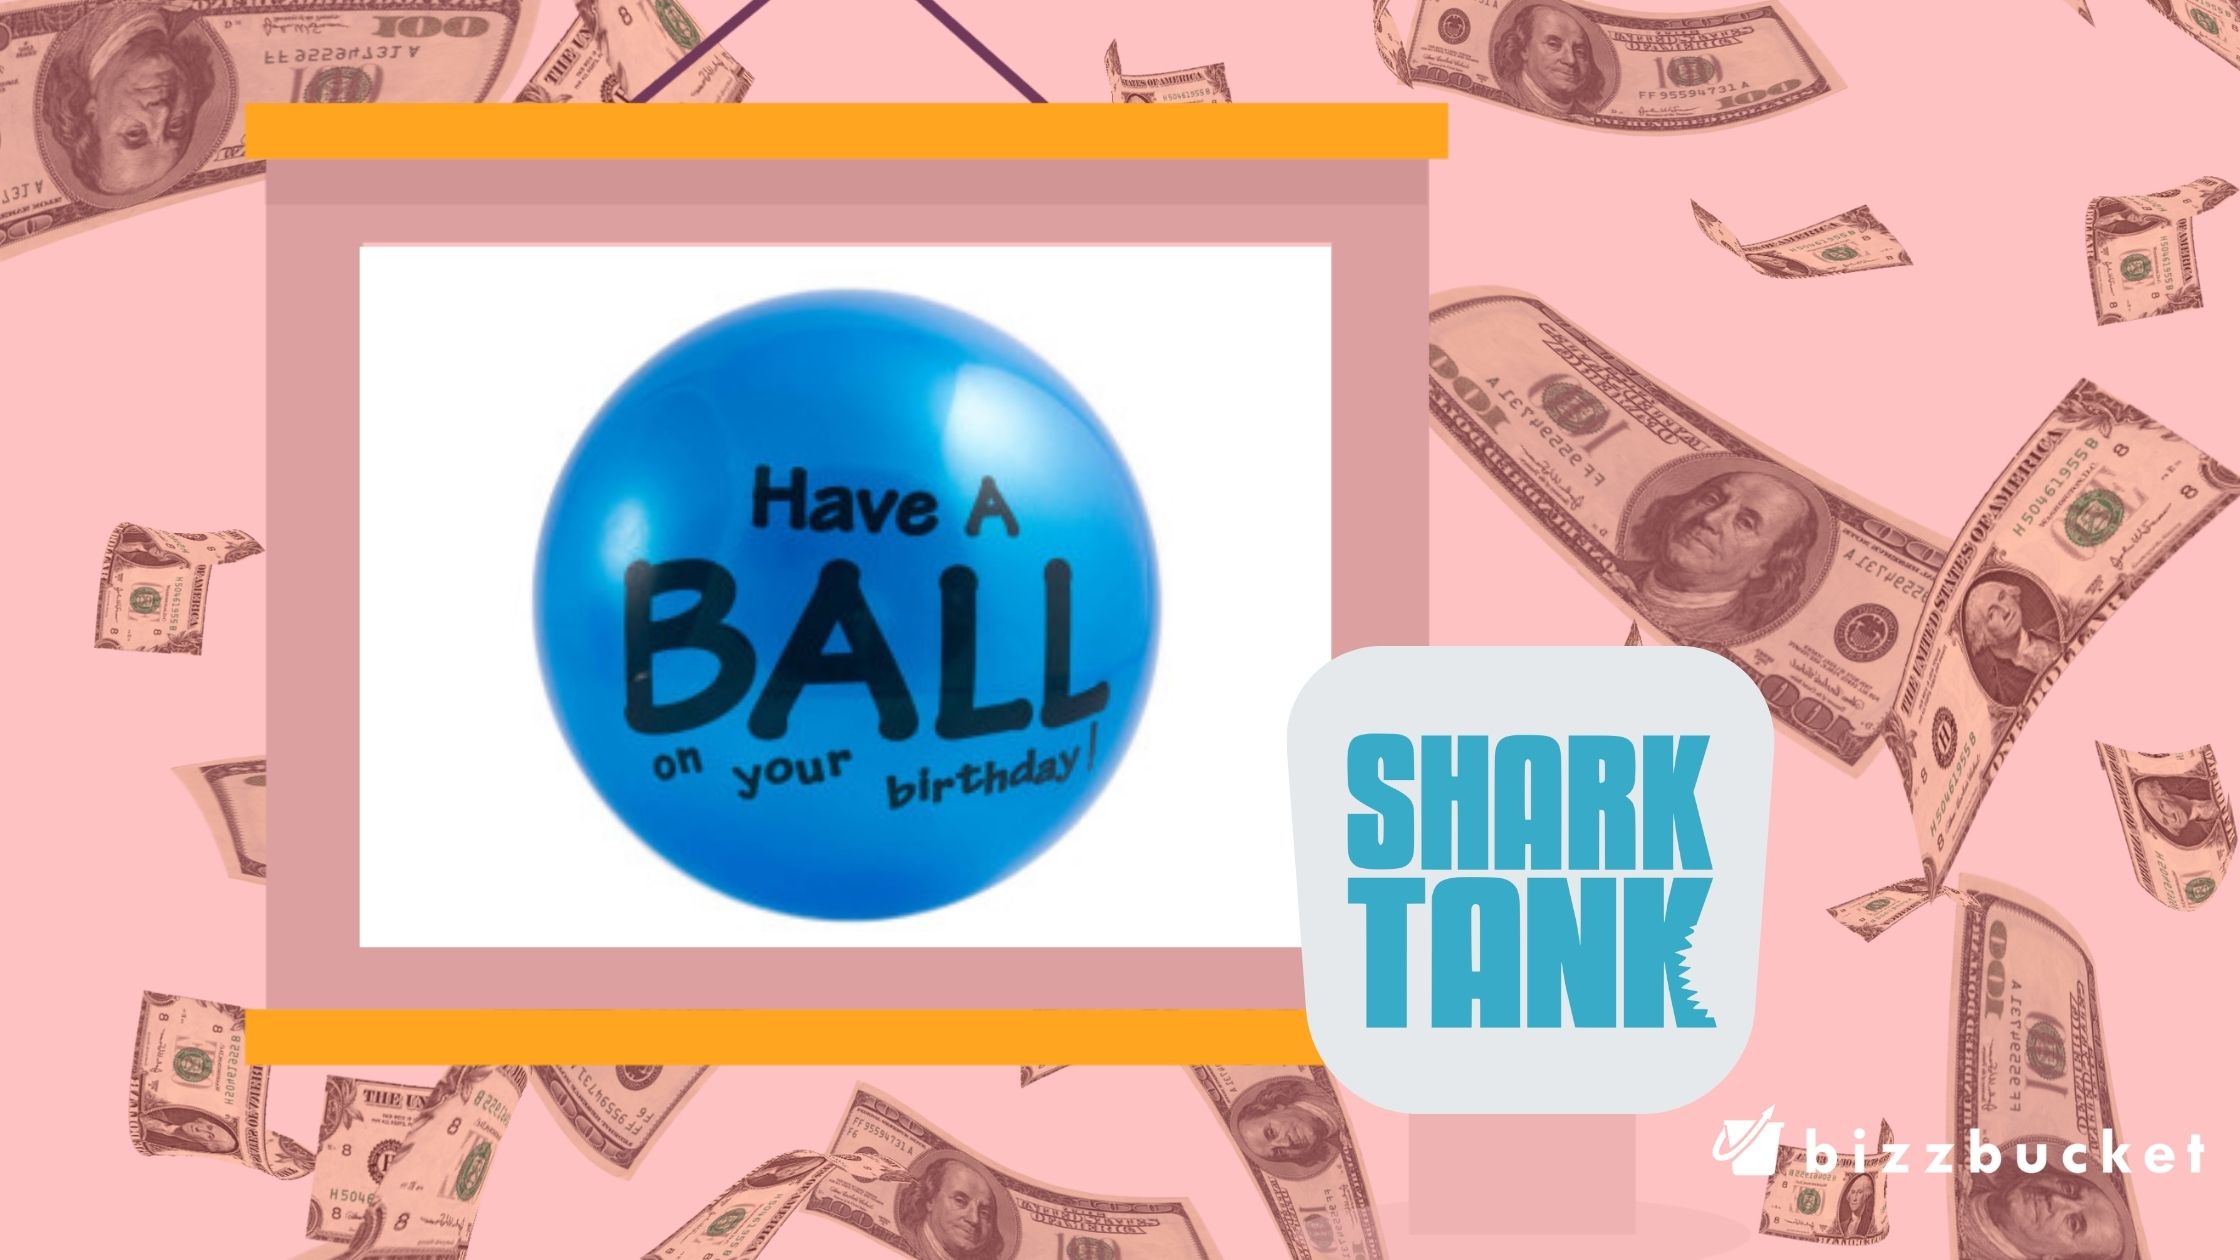 Send a Ball shark tank update